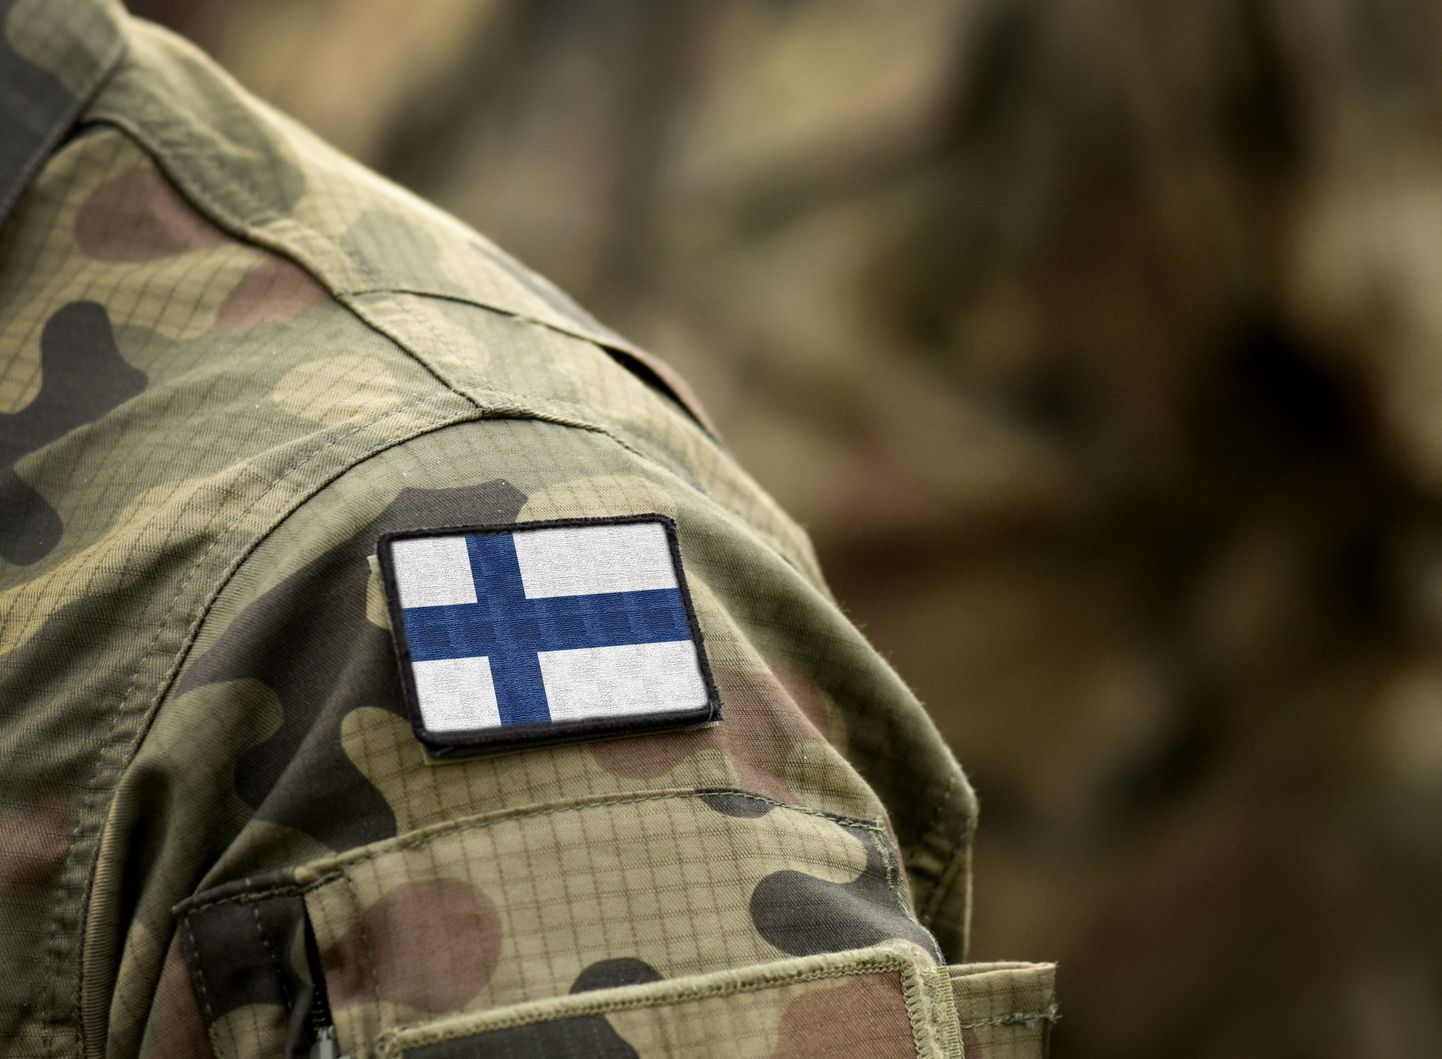 Soome sõjaväelane. Pilt on illustreeriv